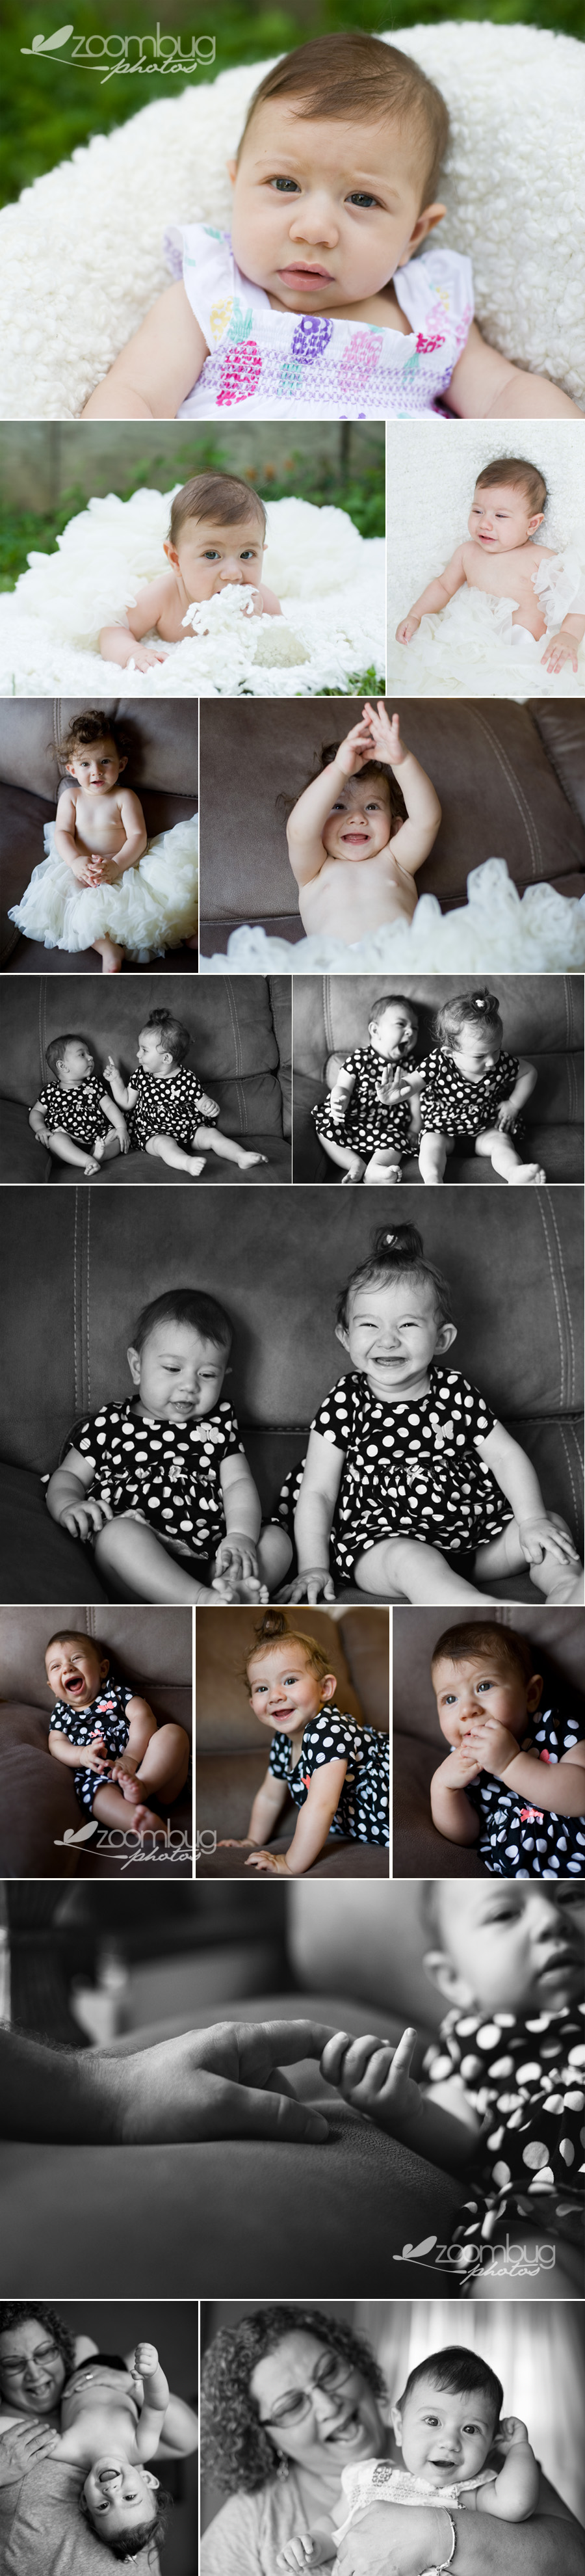 baby-cousins-summertime-photos